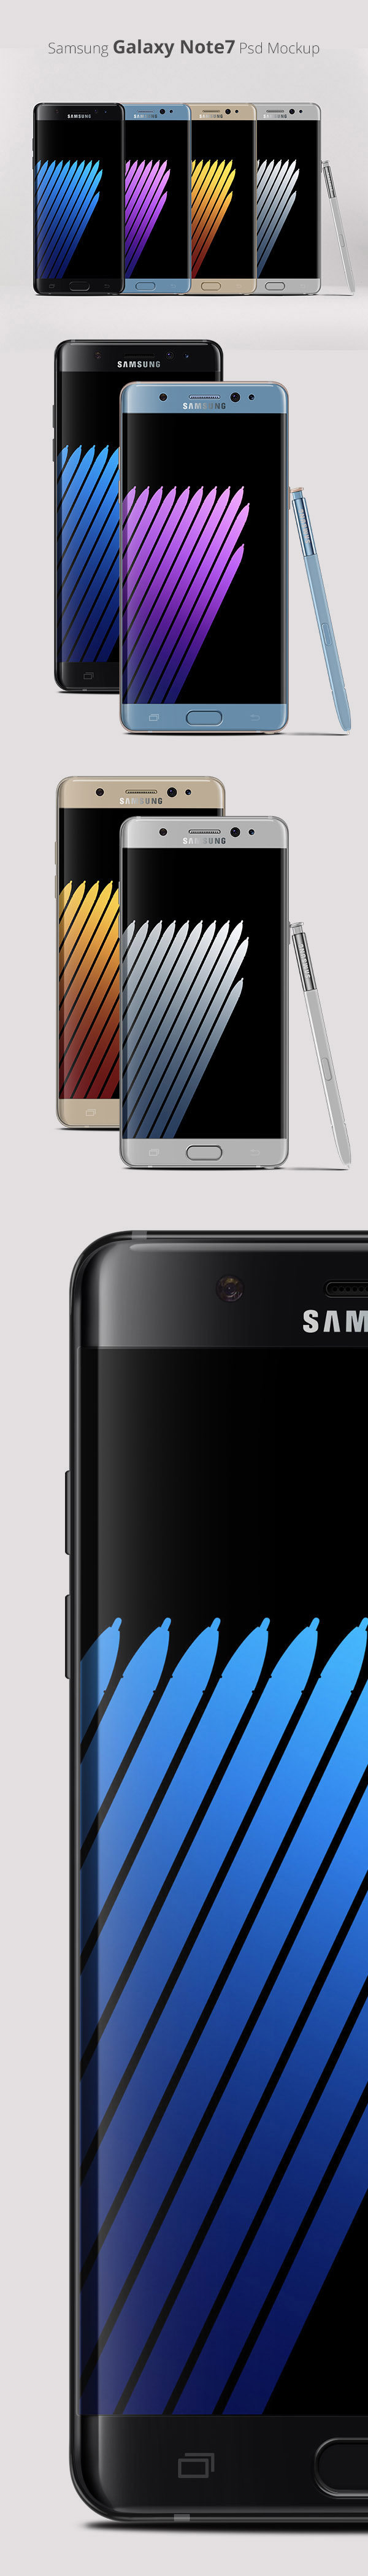 Samsung Galaxy Note7 Psd Mockup